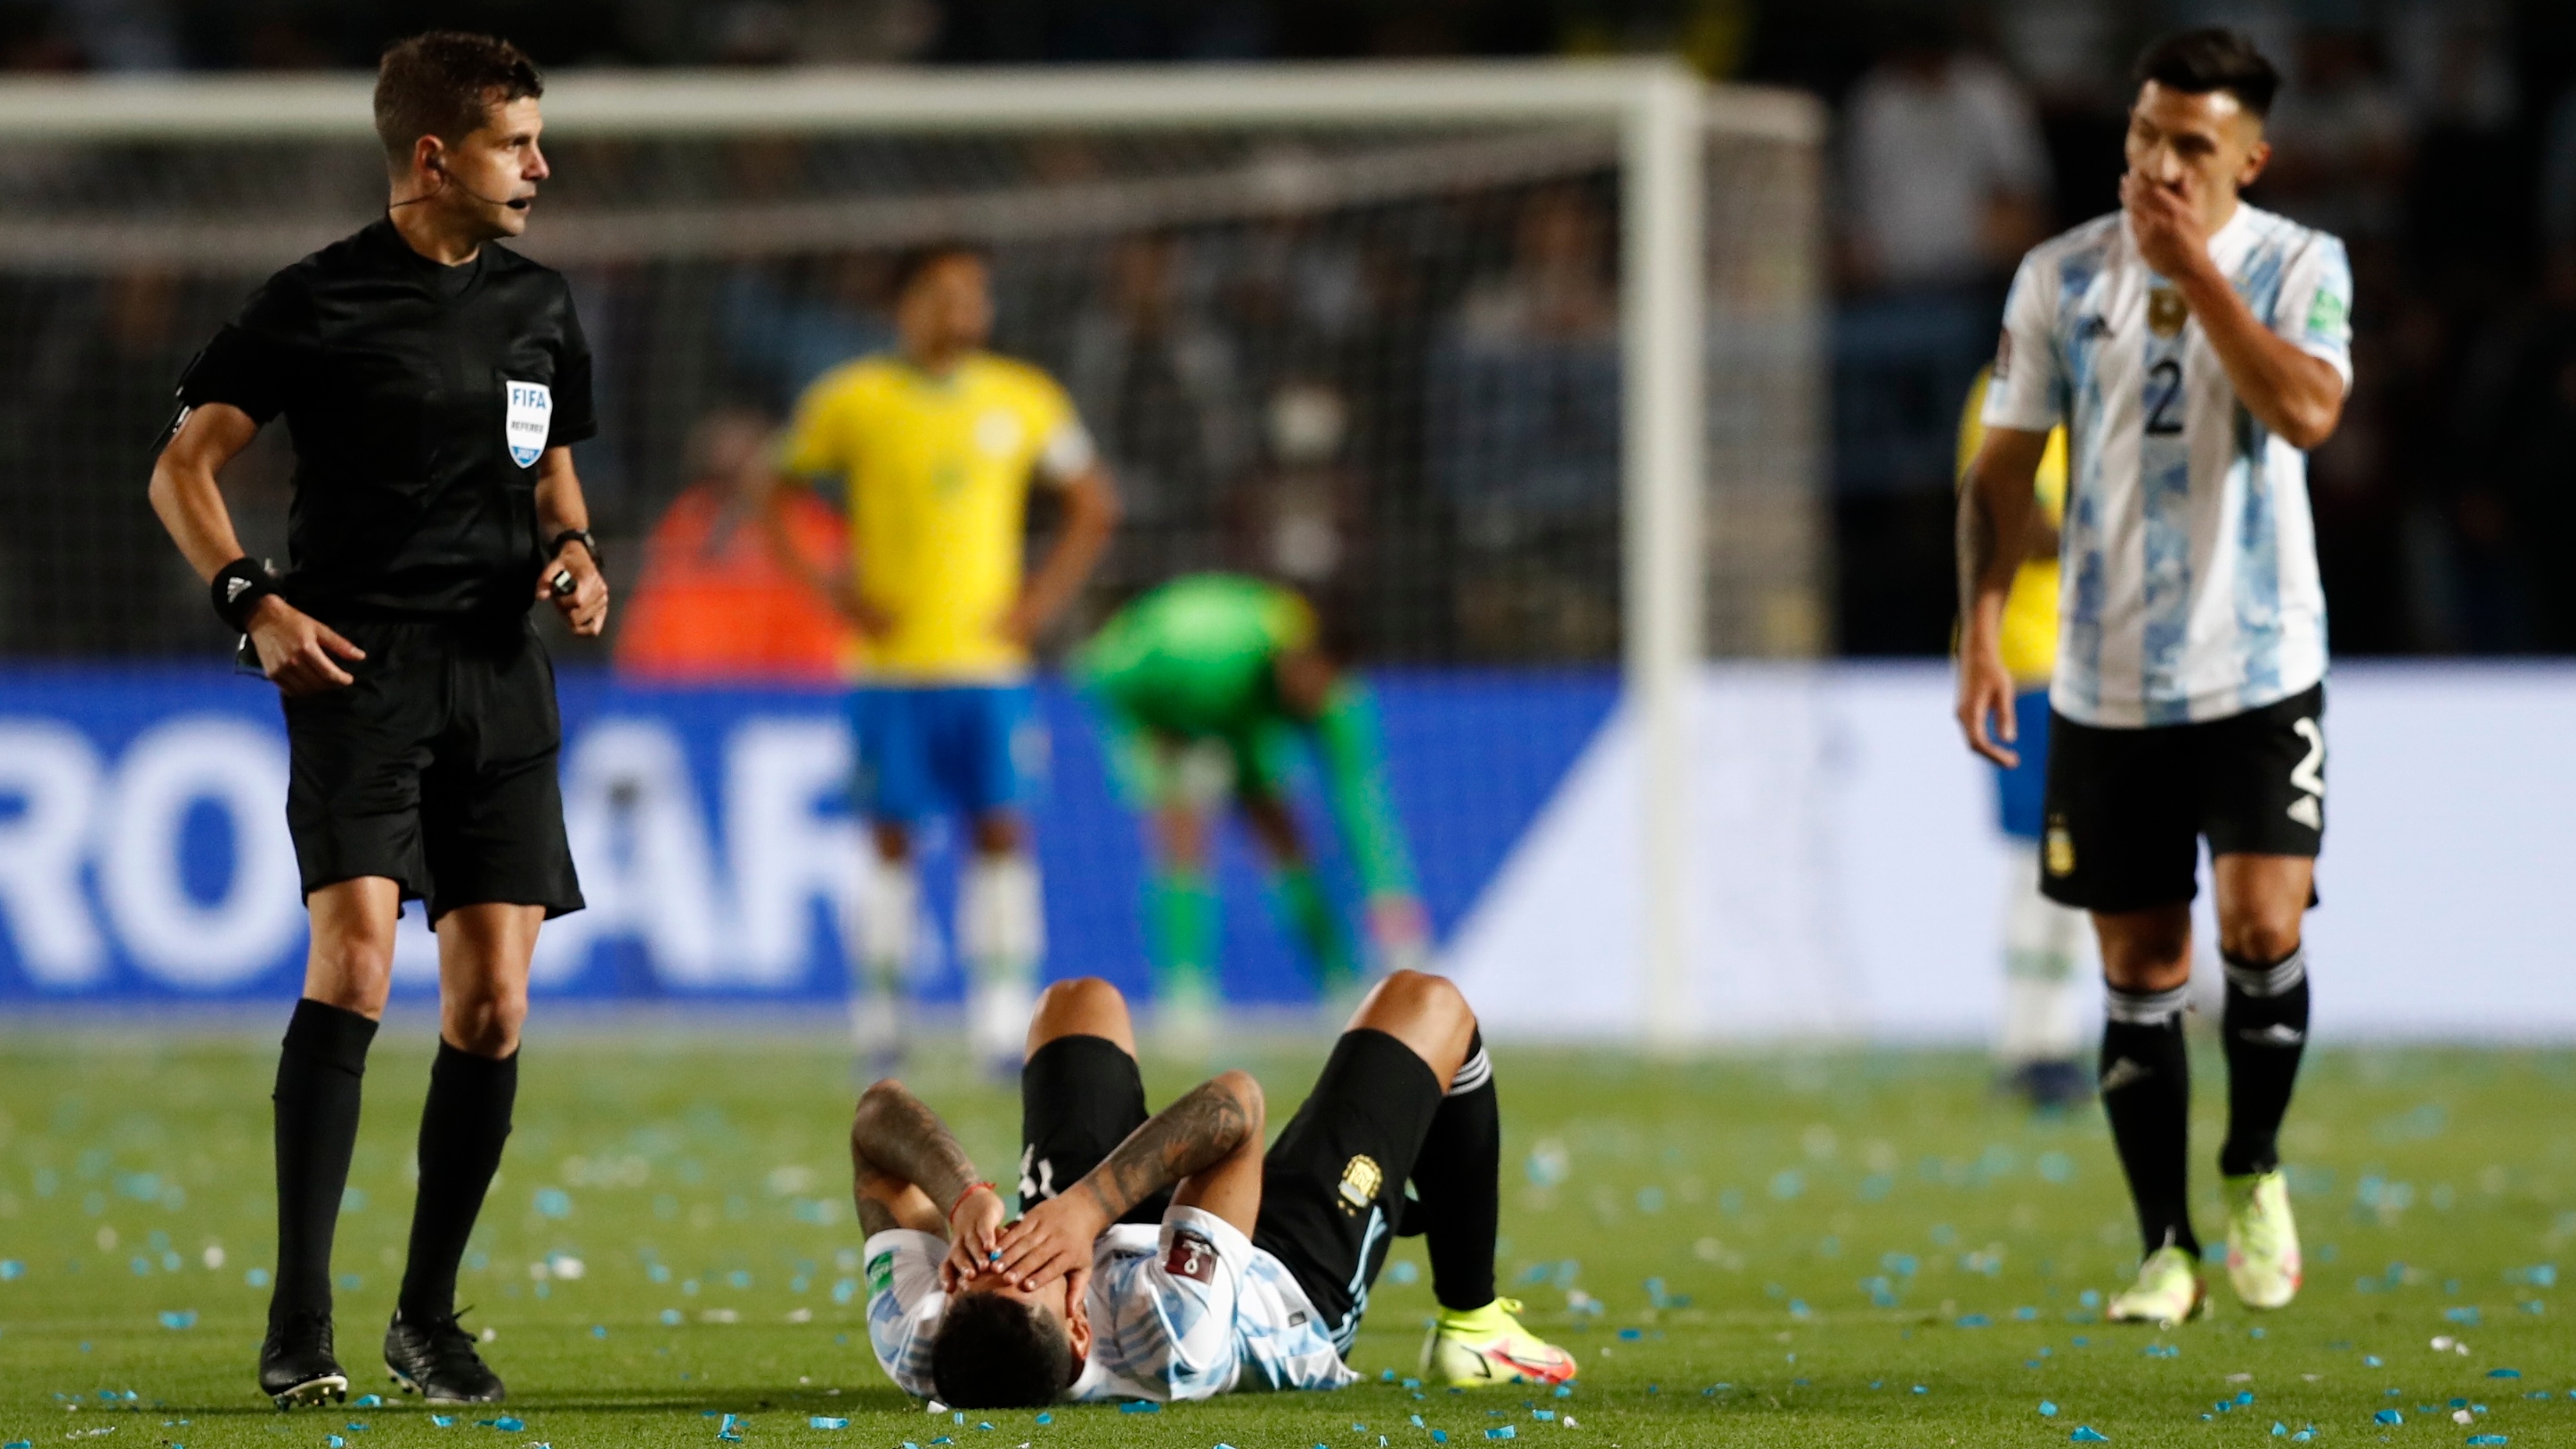 Cuti Romero expresó su dolor por la lesión que lo dejará afuera del fútbol hasta el próximo año